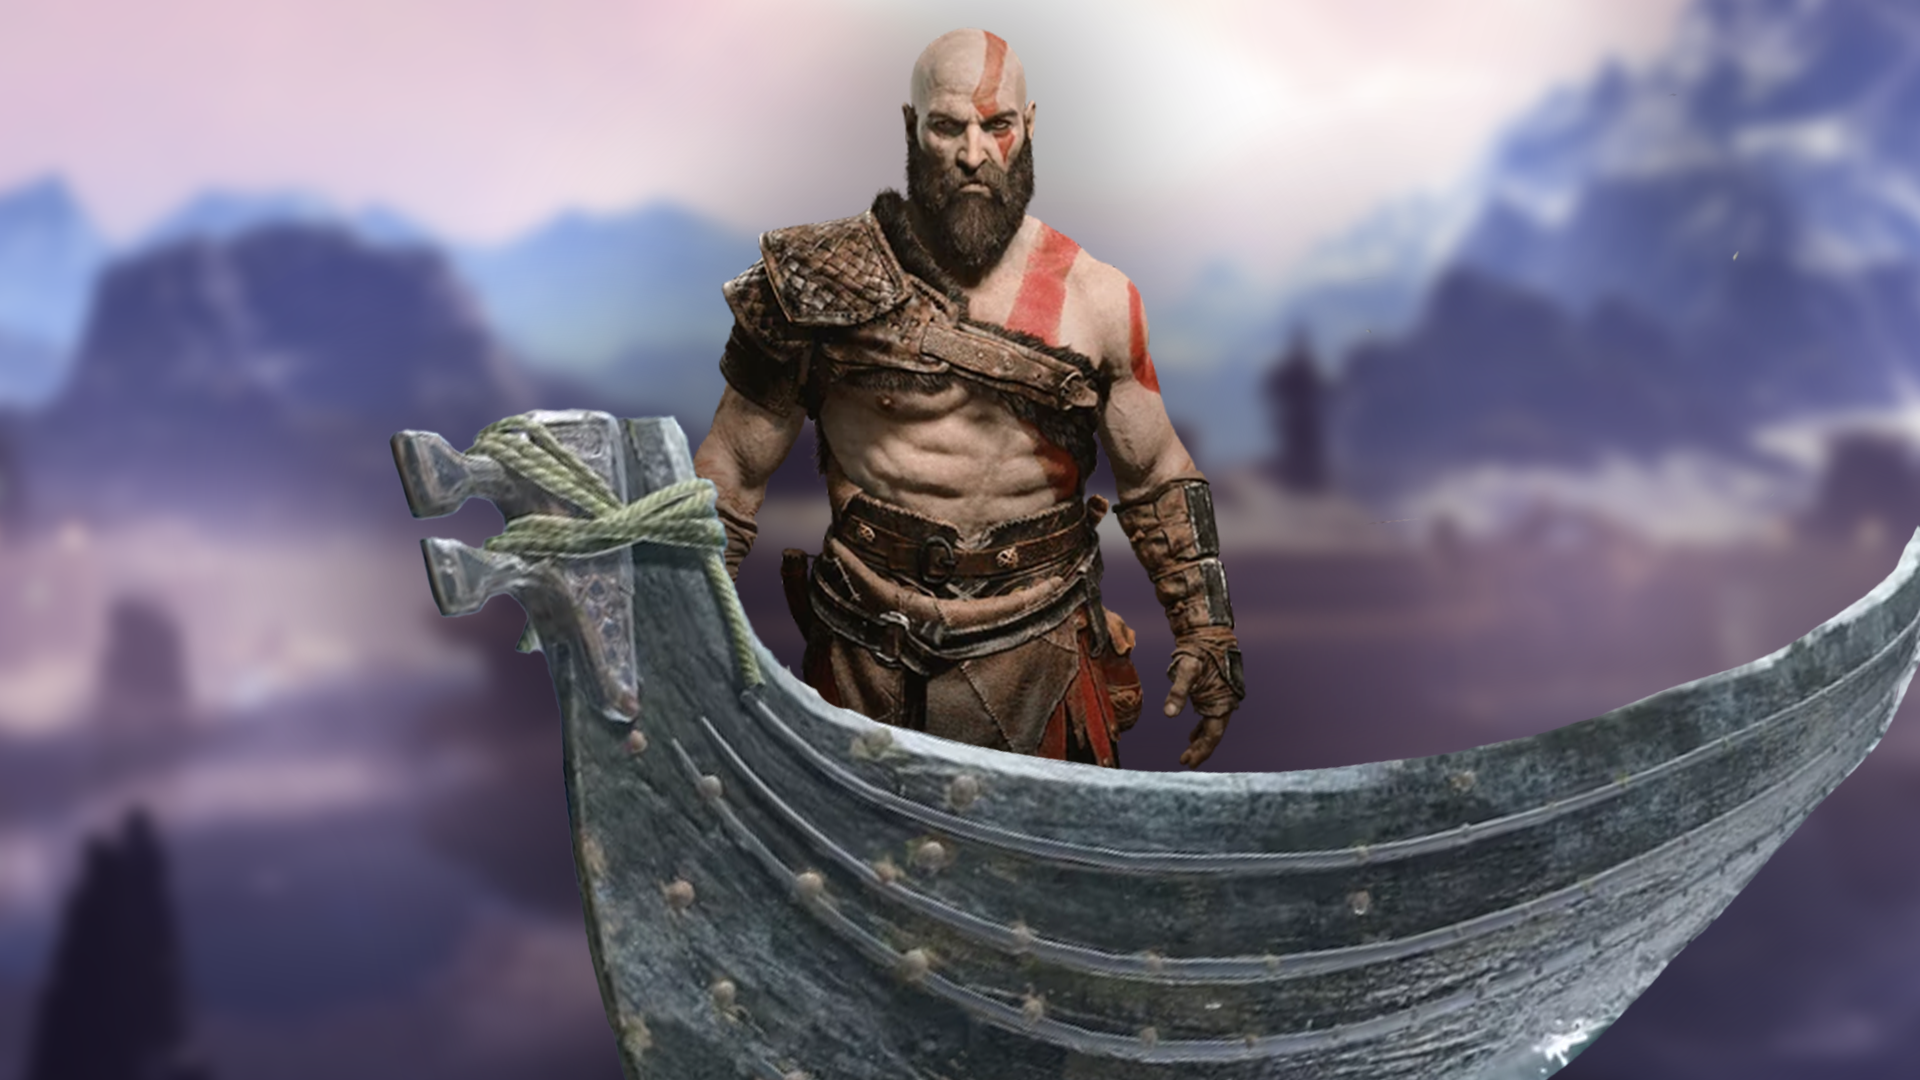 Kratos on a Boat God of War